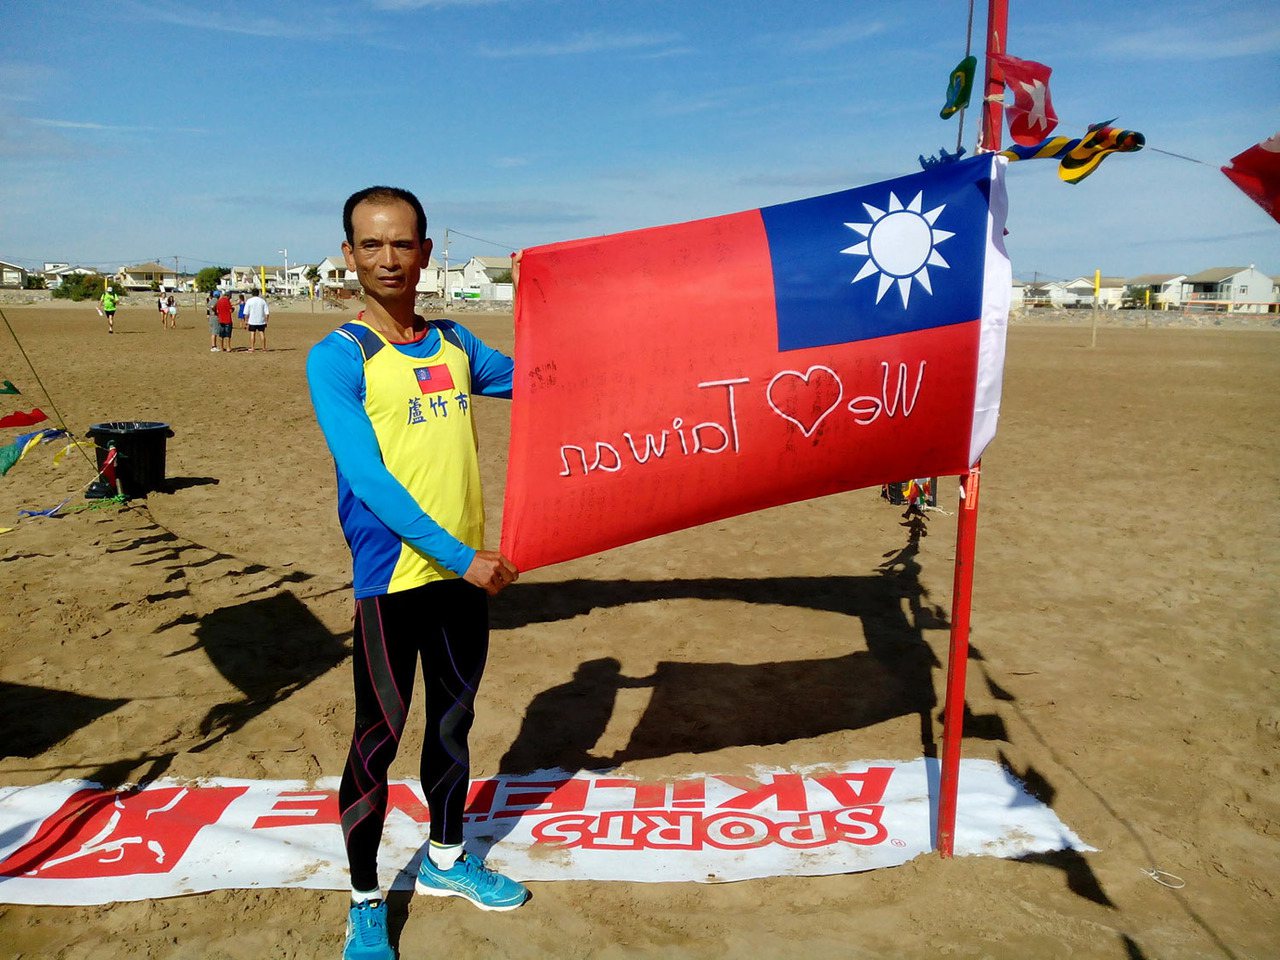 台灣知名超馬好手蔡萬春（見圖）治療失眠愛上超馬，2014年帶著國旗勇奪法國1190公里國際超馬賽亞軍。